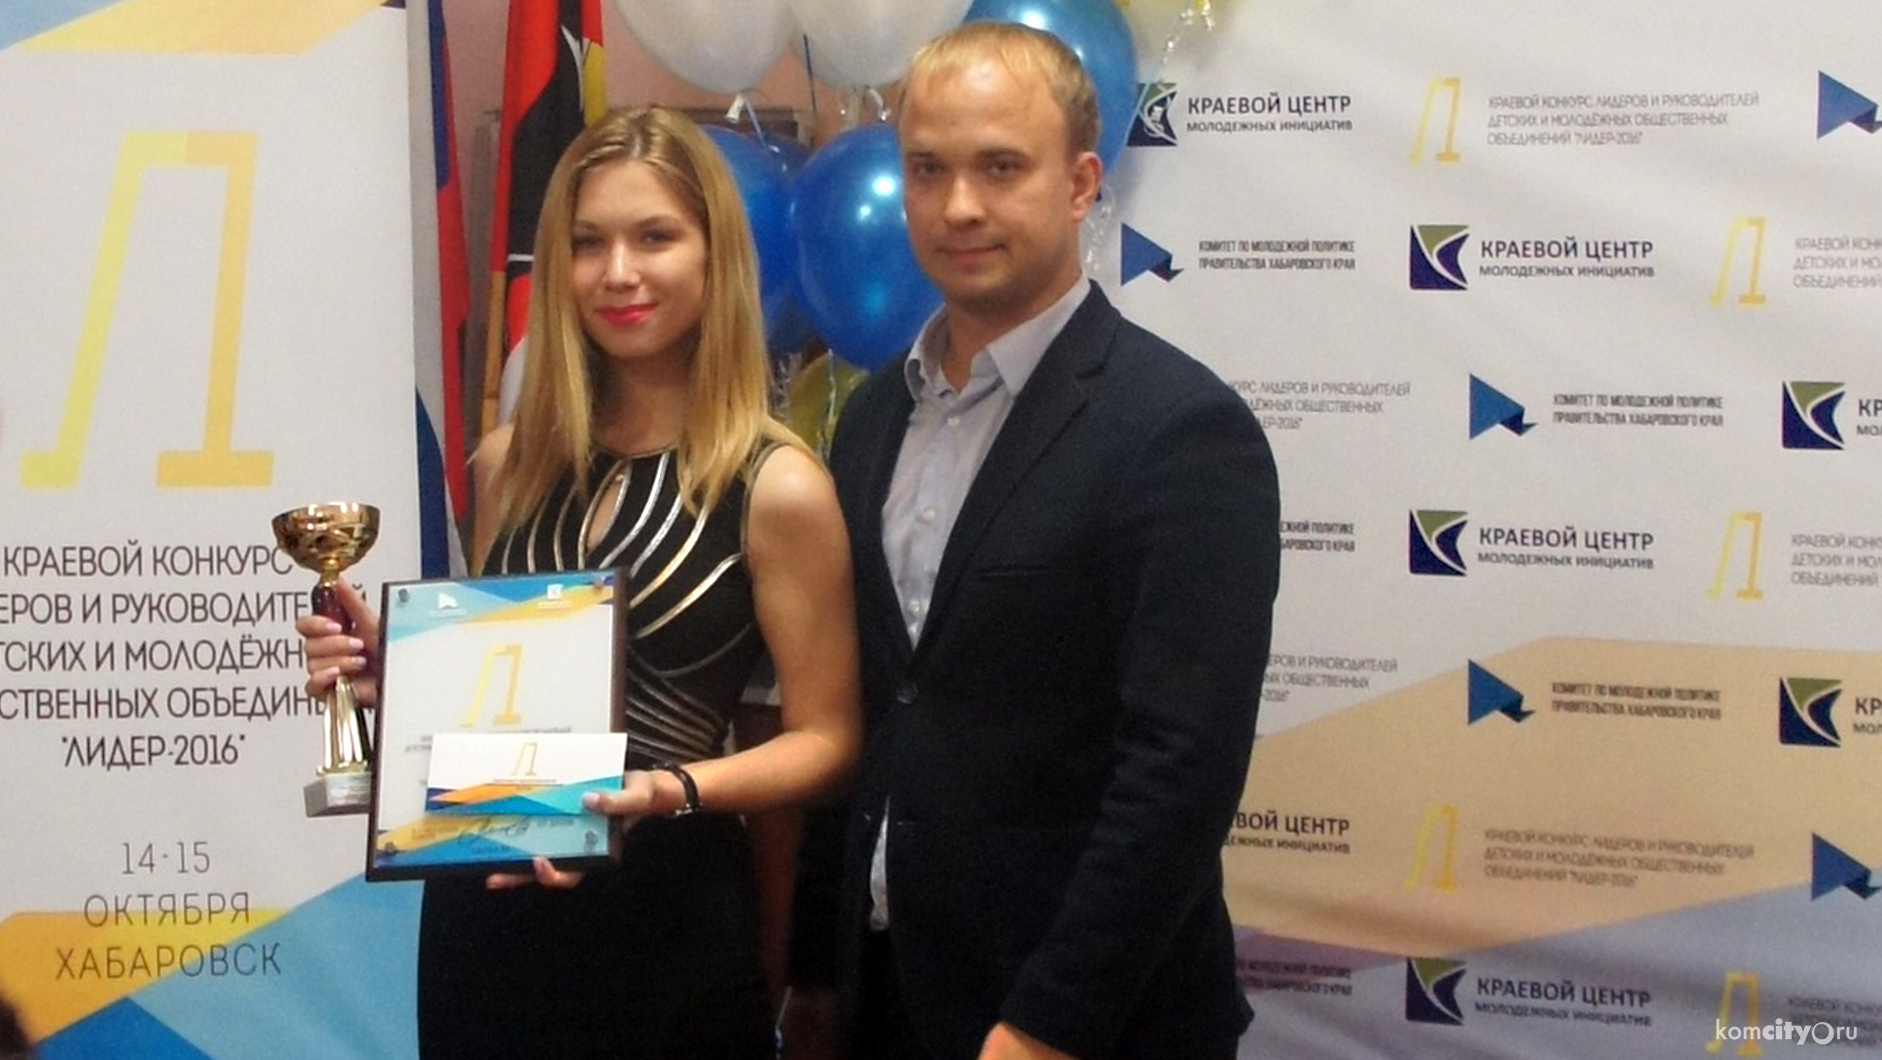 Комсомольчане Елена Носкова и Евгений Шлыков вошли в число победителей краевого конкурса молодёжных лидеров